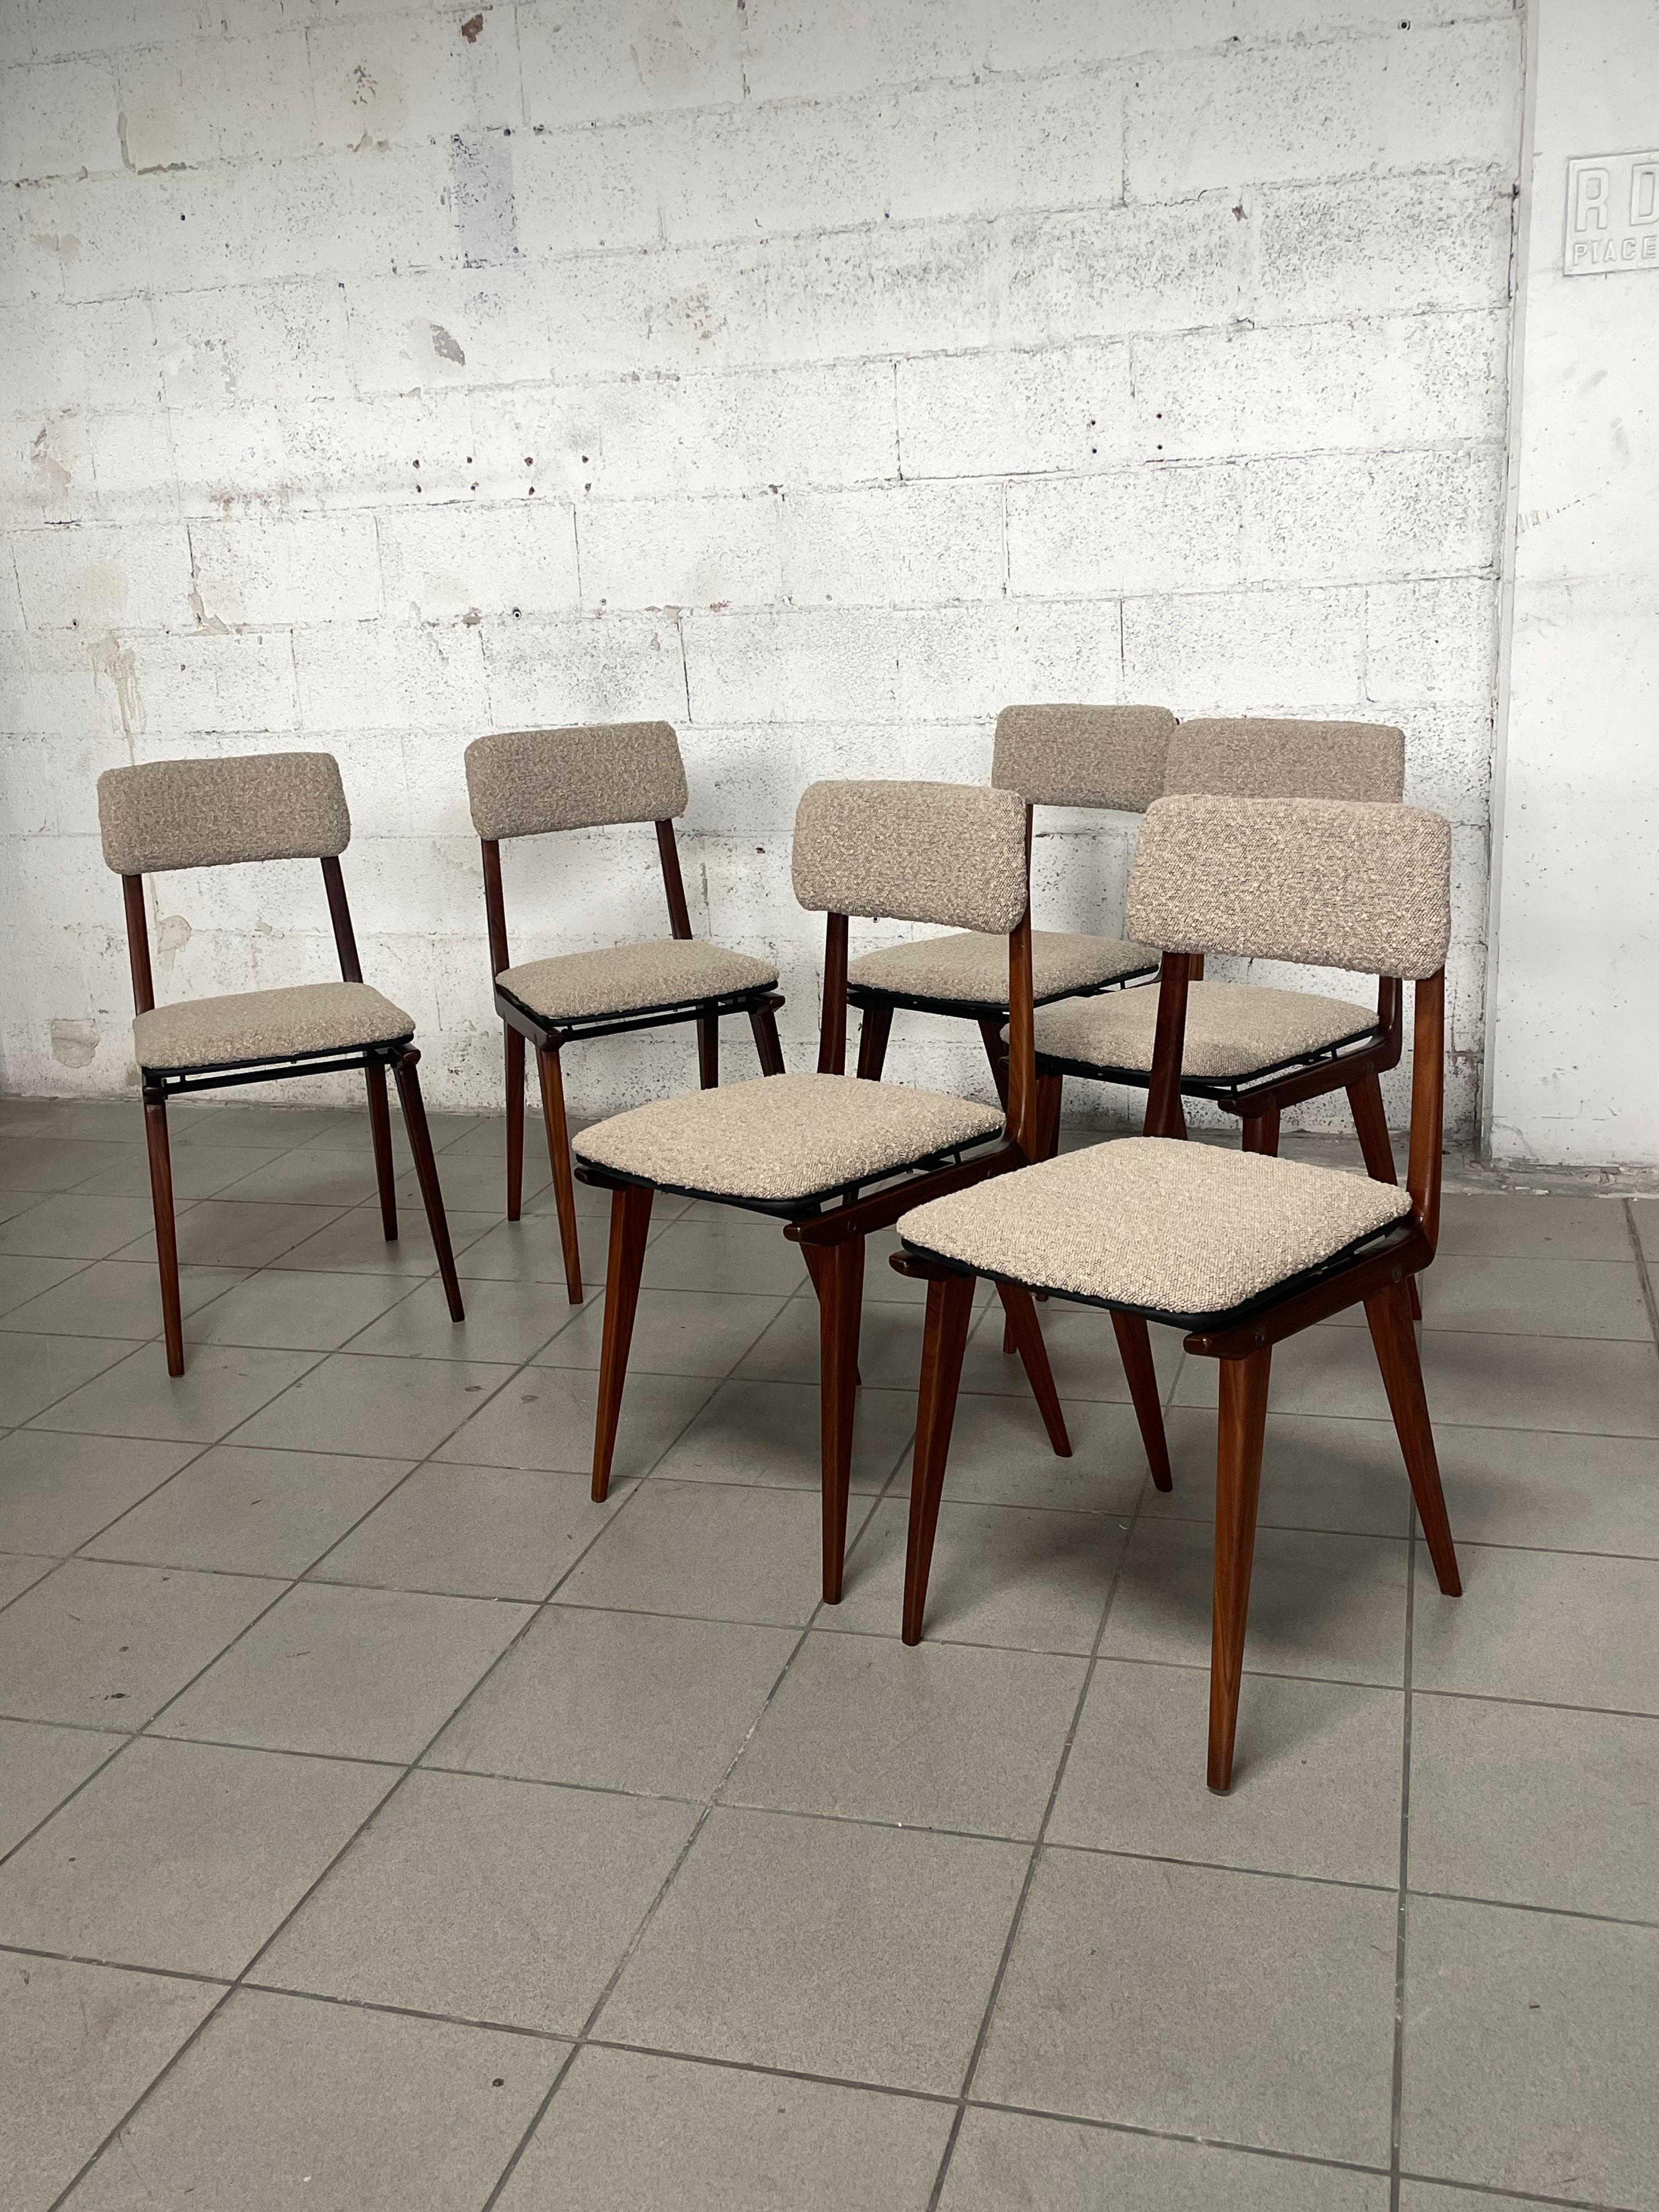 Set di 6 sedie modello “Lella” prodotte negli anni ’50 dalla Elam di Milano su progetto di Ezio Longhi.

Il set è stato completamente restaurato sia nella sua struttura che per quanto riguarda il rivestimento che si presenta in bouclè colore